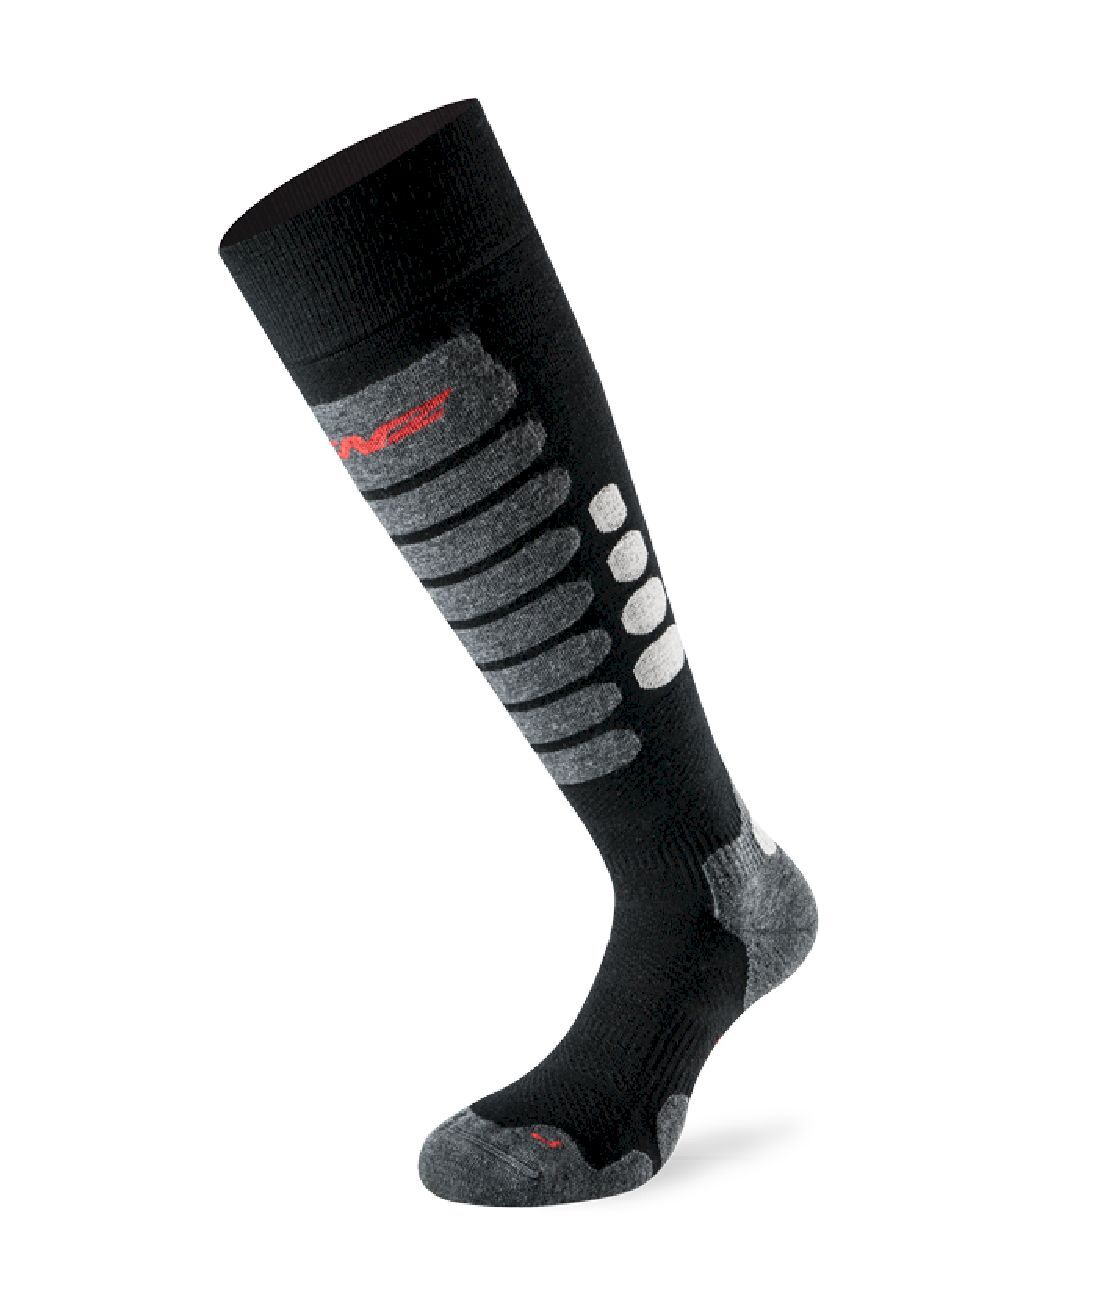 Lenz Skiing 3.0 - Ski socks